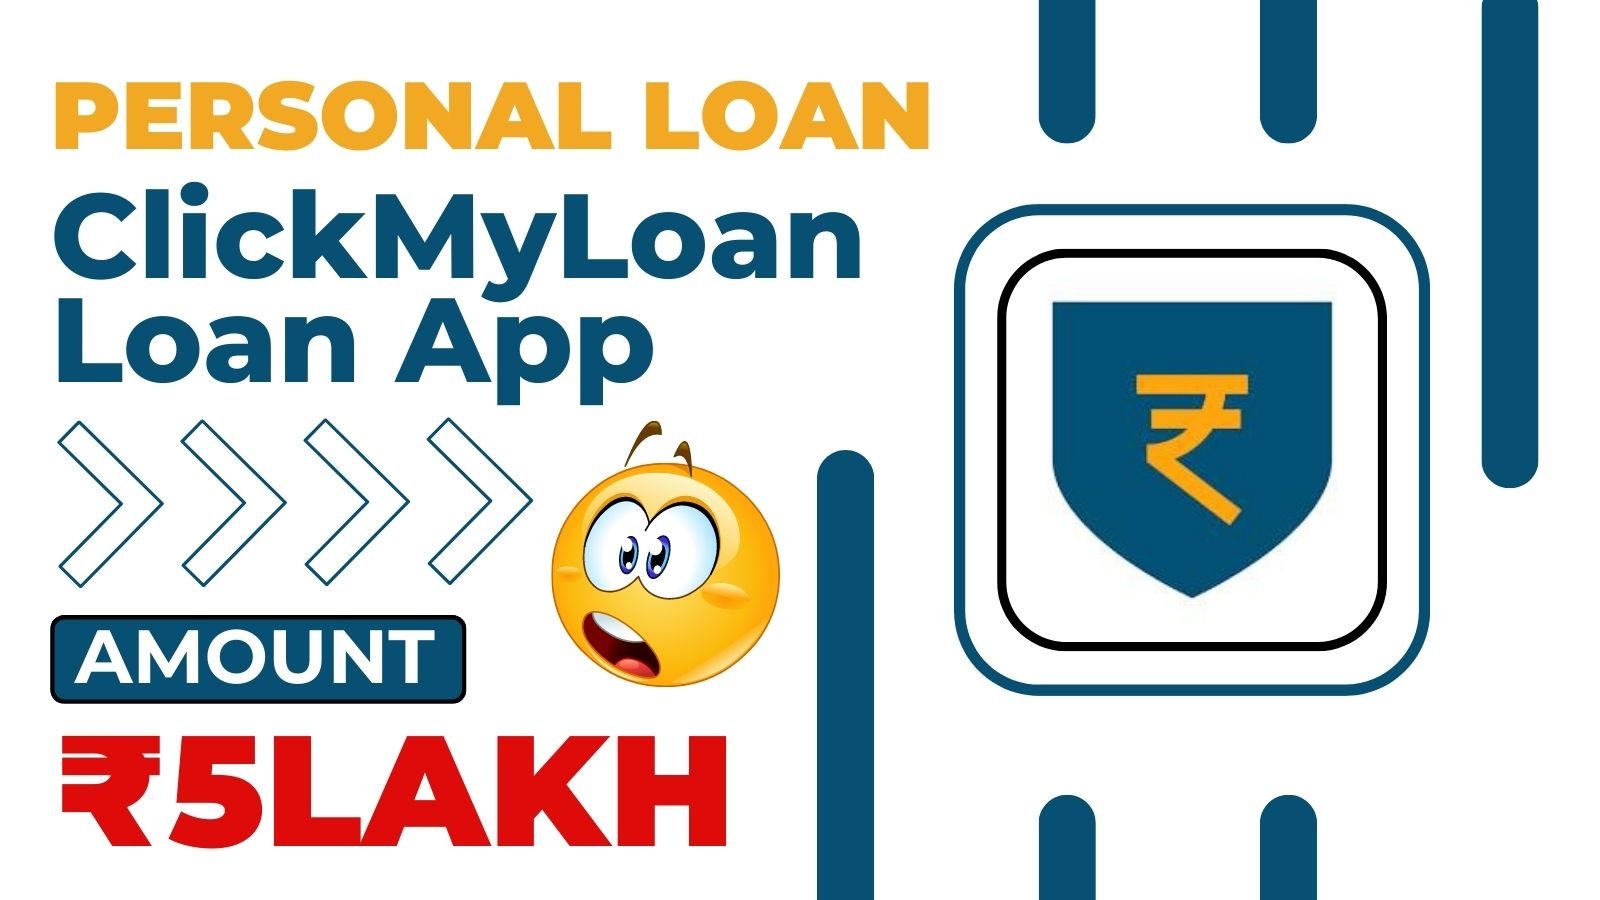 ClickMyLoan Loan App Loan Amount